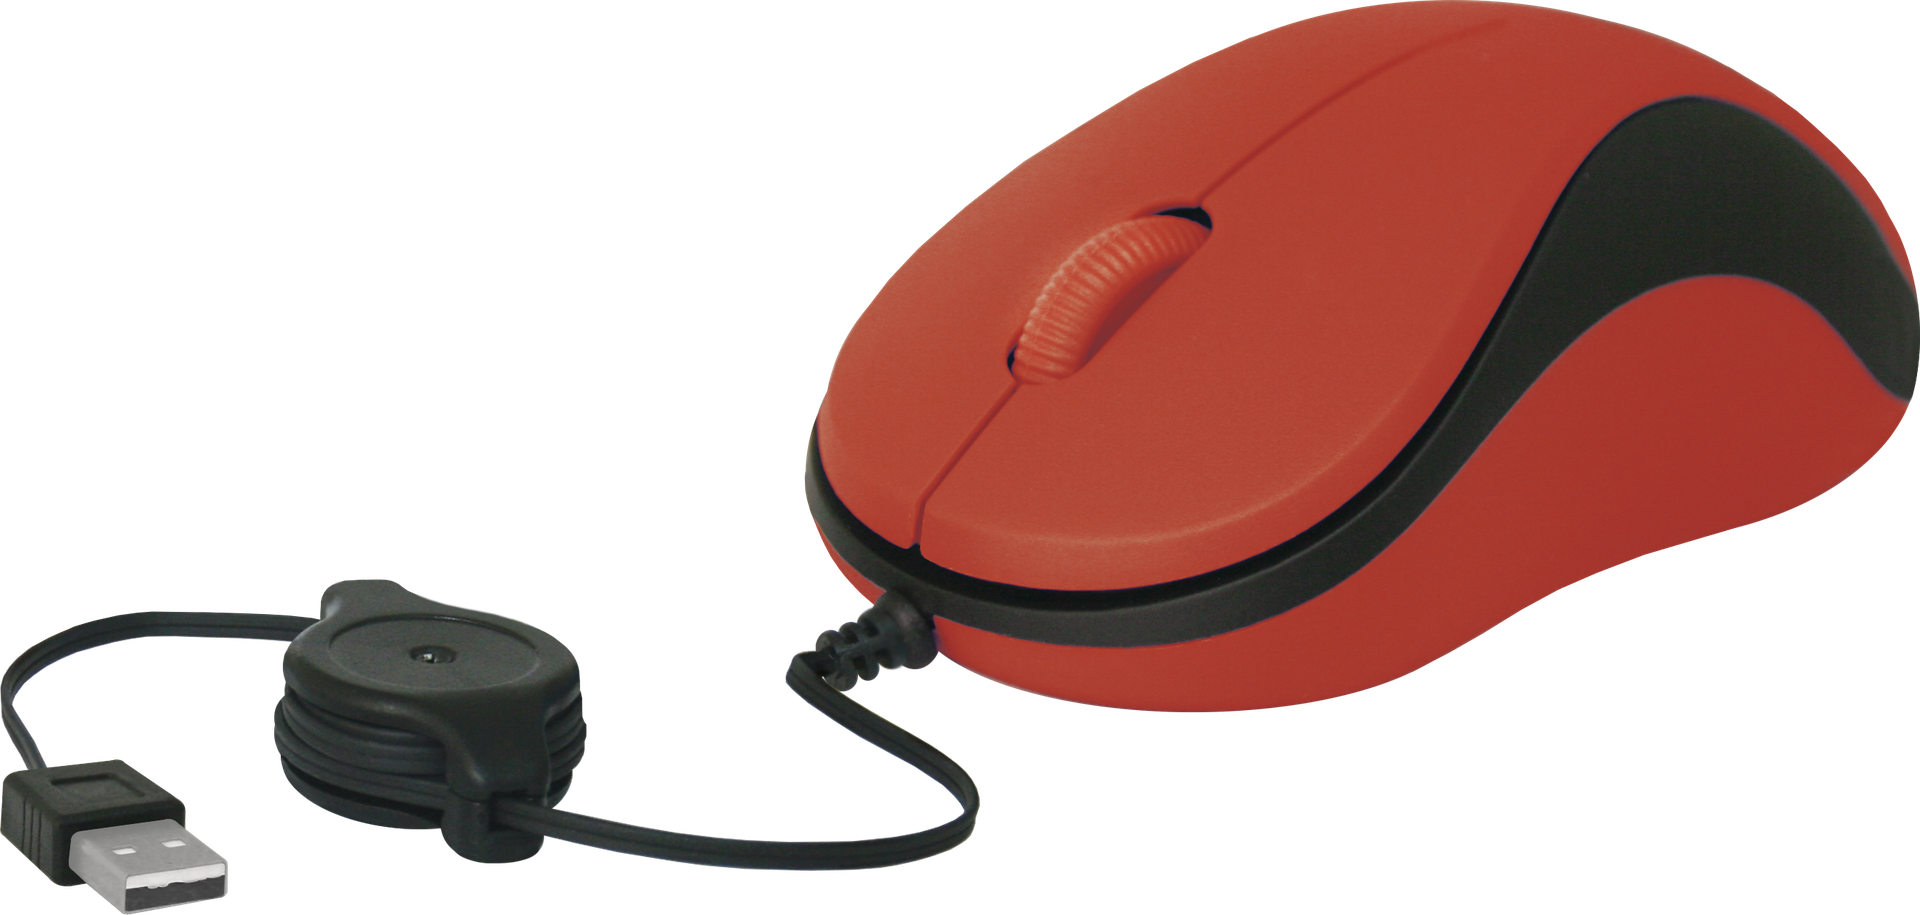 Мышь Defender провод MS-960 красный, скручивающий кабель